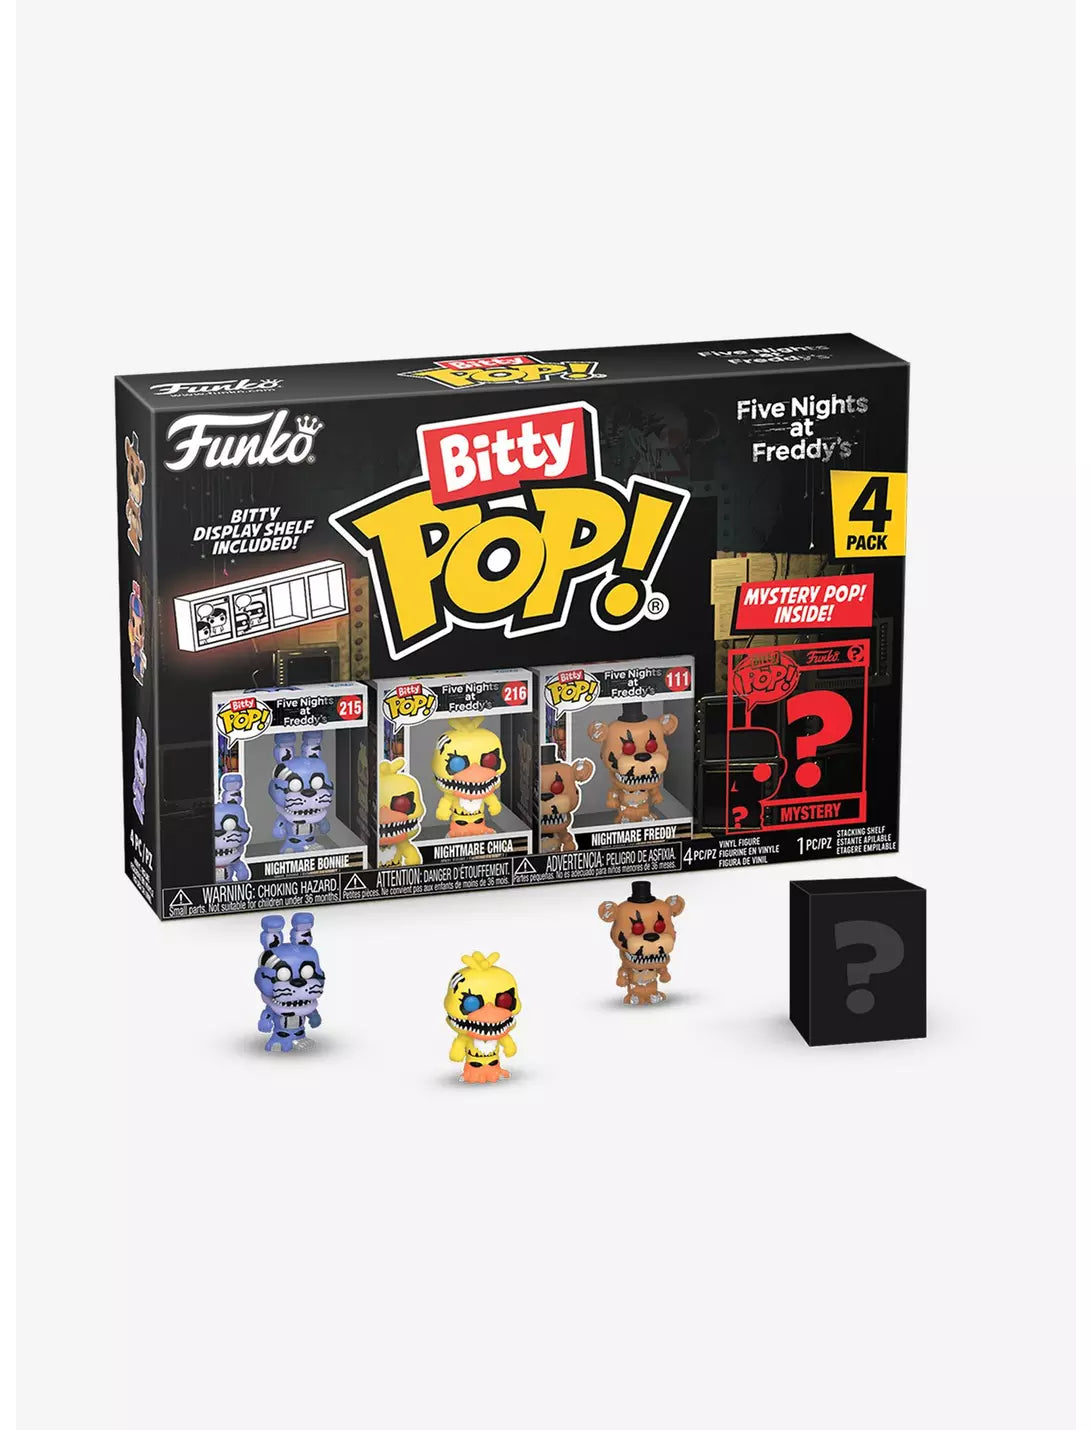 Nights At Freddys FNAF Bitty Pop 4 Pack